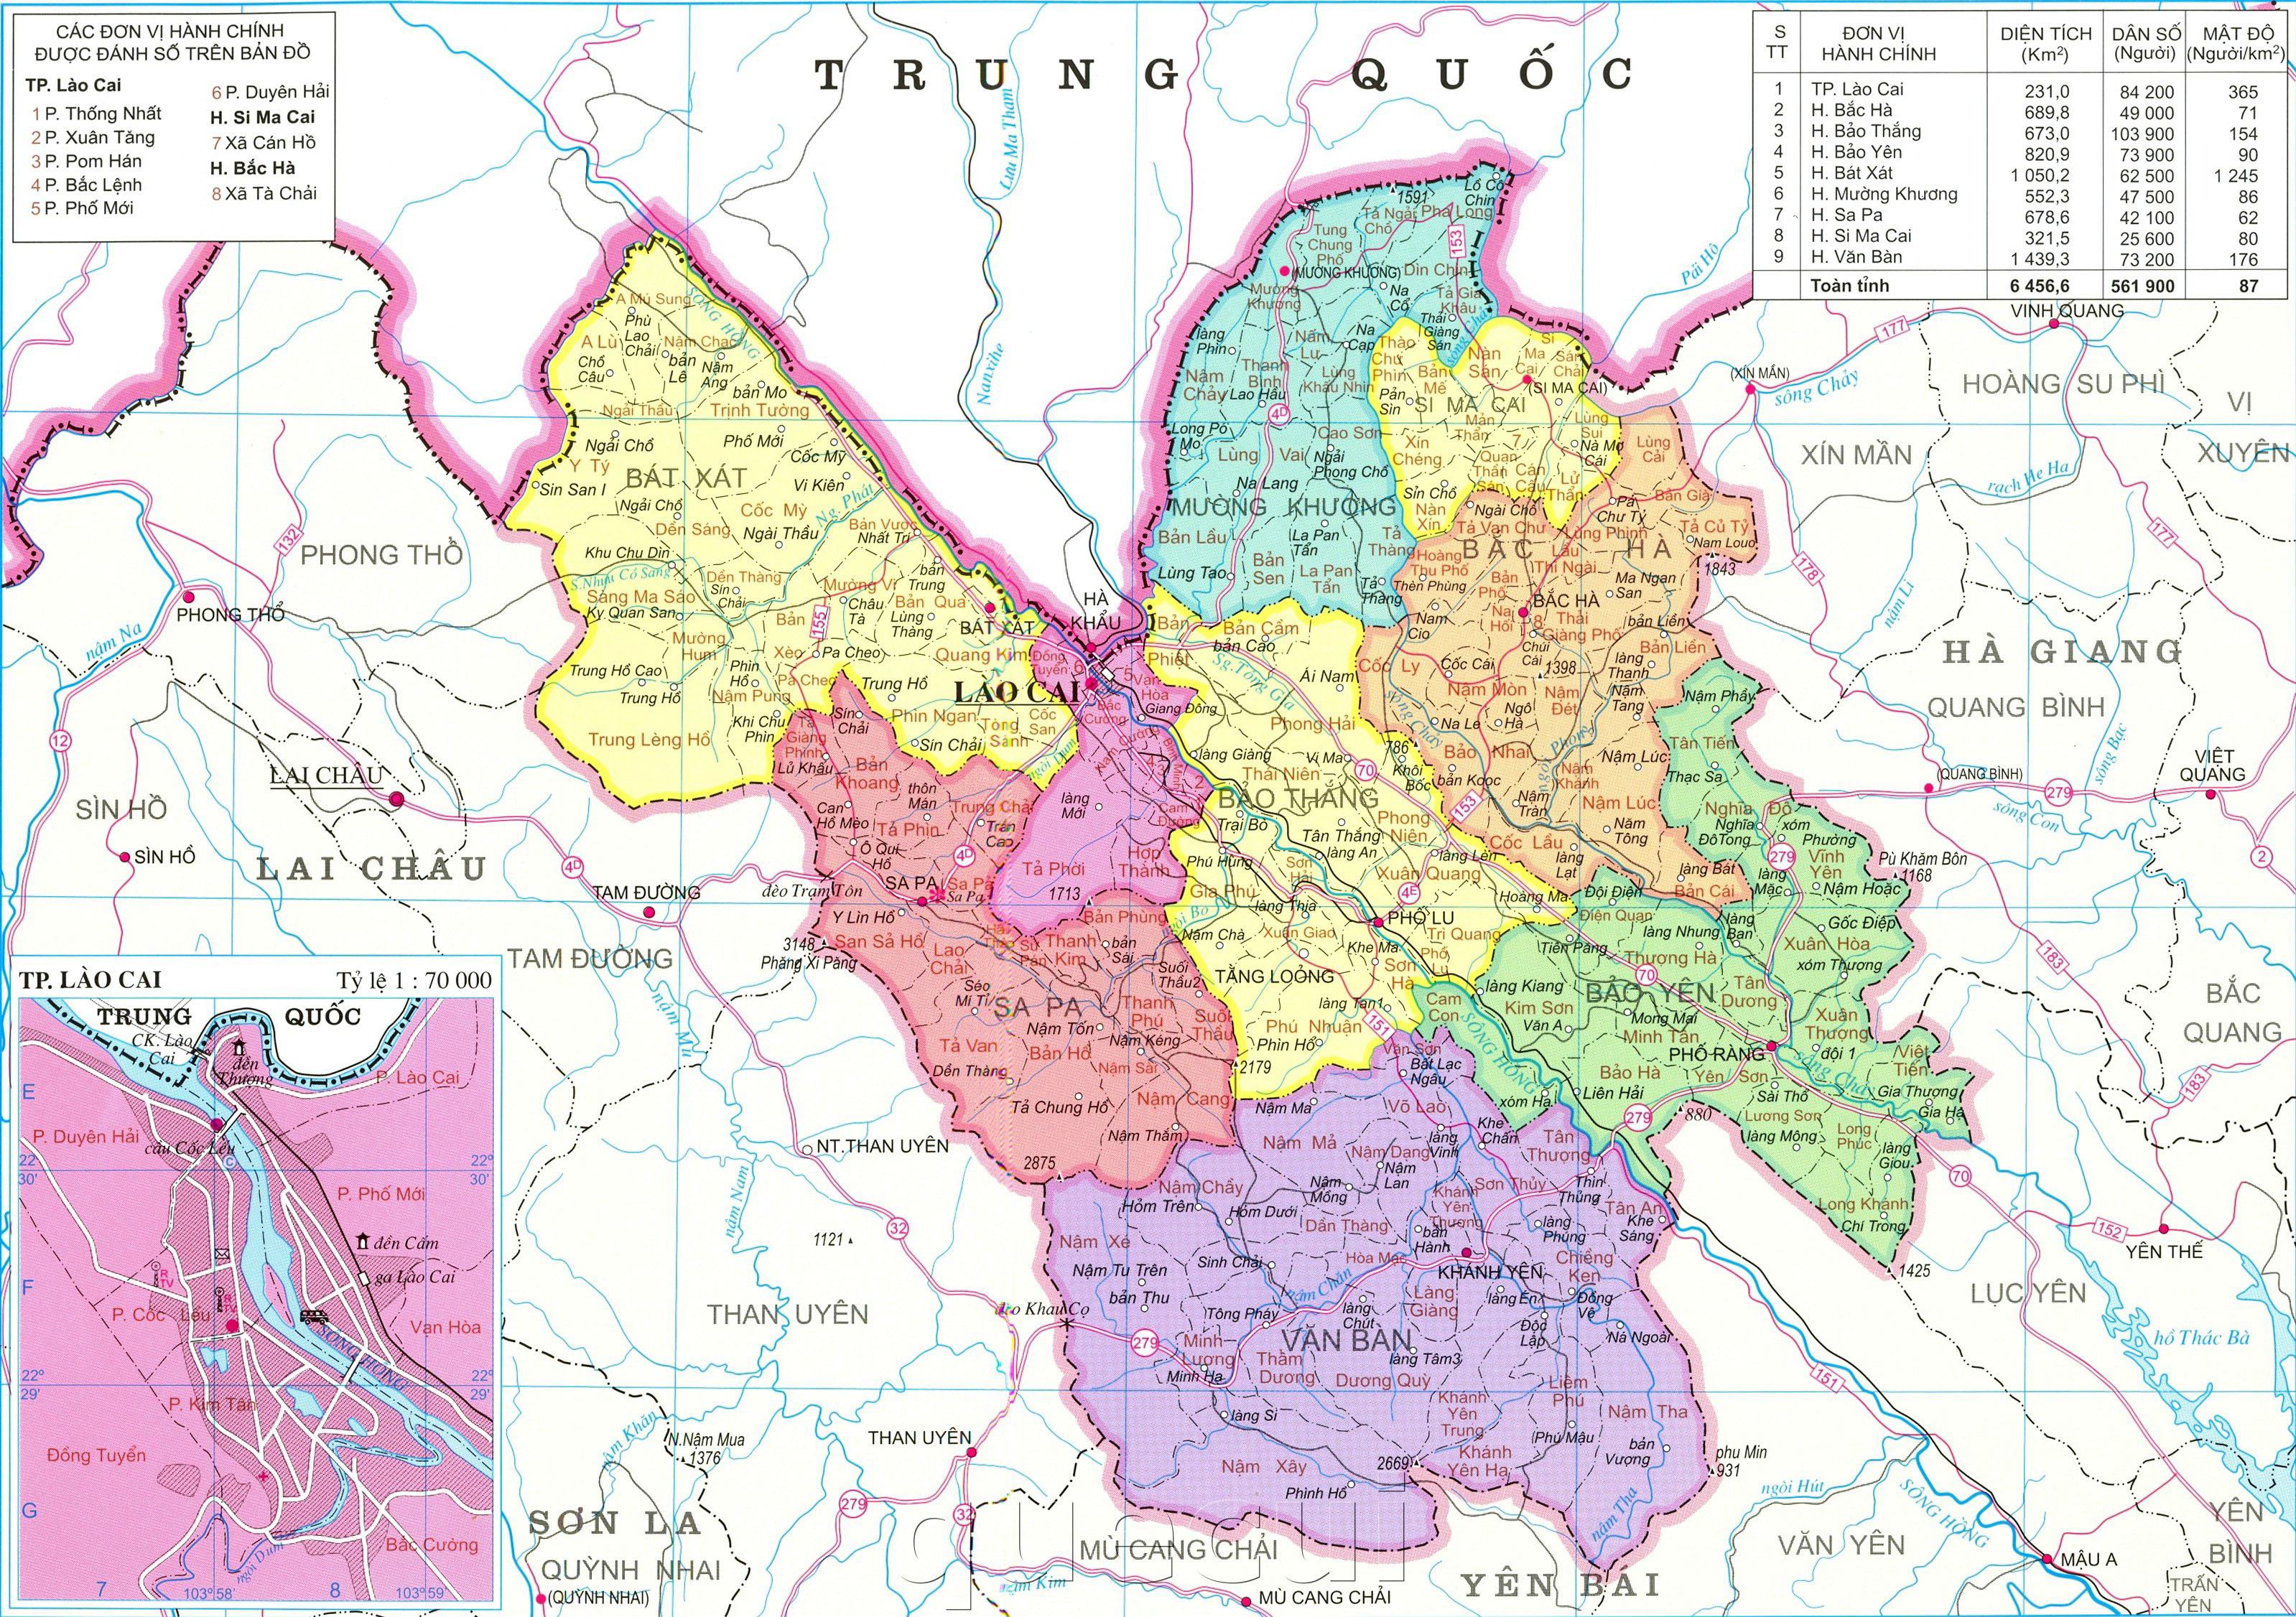 Tải bản đồ hành chính tỉnh Lào Cai 2024
Tải bản đồ hành chính tỉnh Lào Cai 2024 để có được một cái nhìn tổng quan về các địa điểm và khu vực trong tỉnh. Với nhiều tiện ích giúp dễ dàng tìm kiếm thông tin, bạn sẽ không bao giờ bị lạc khi khám phá Lào Cai.